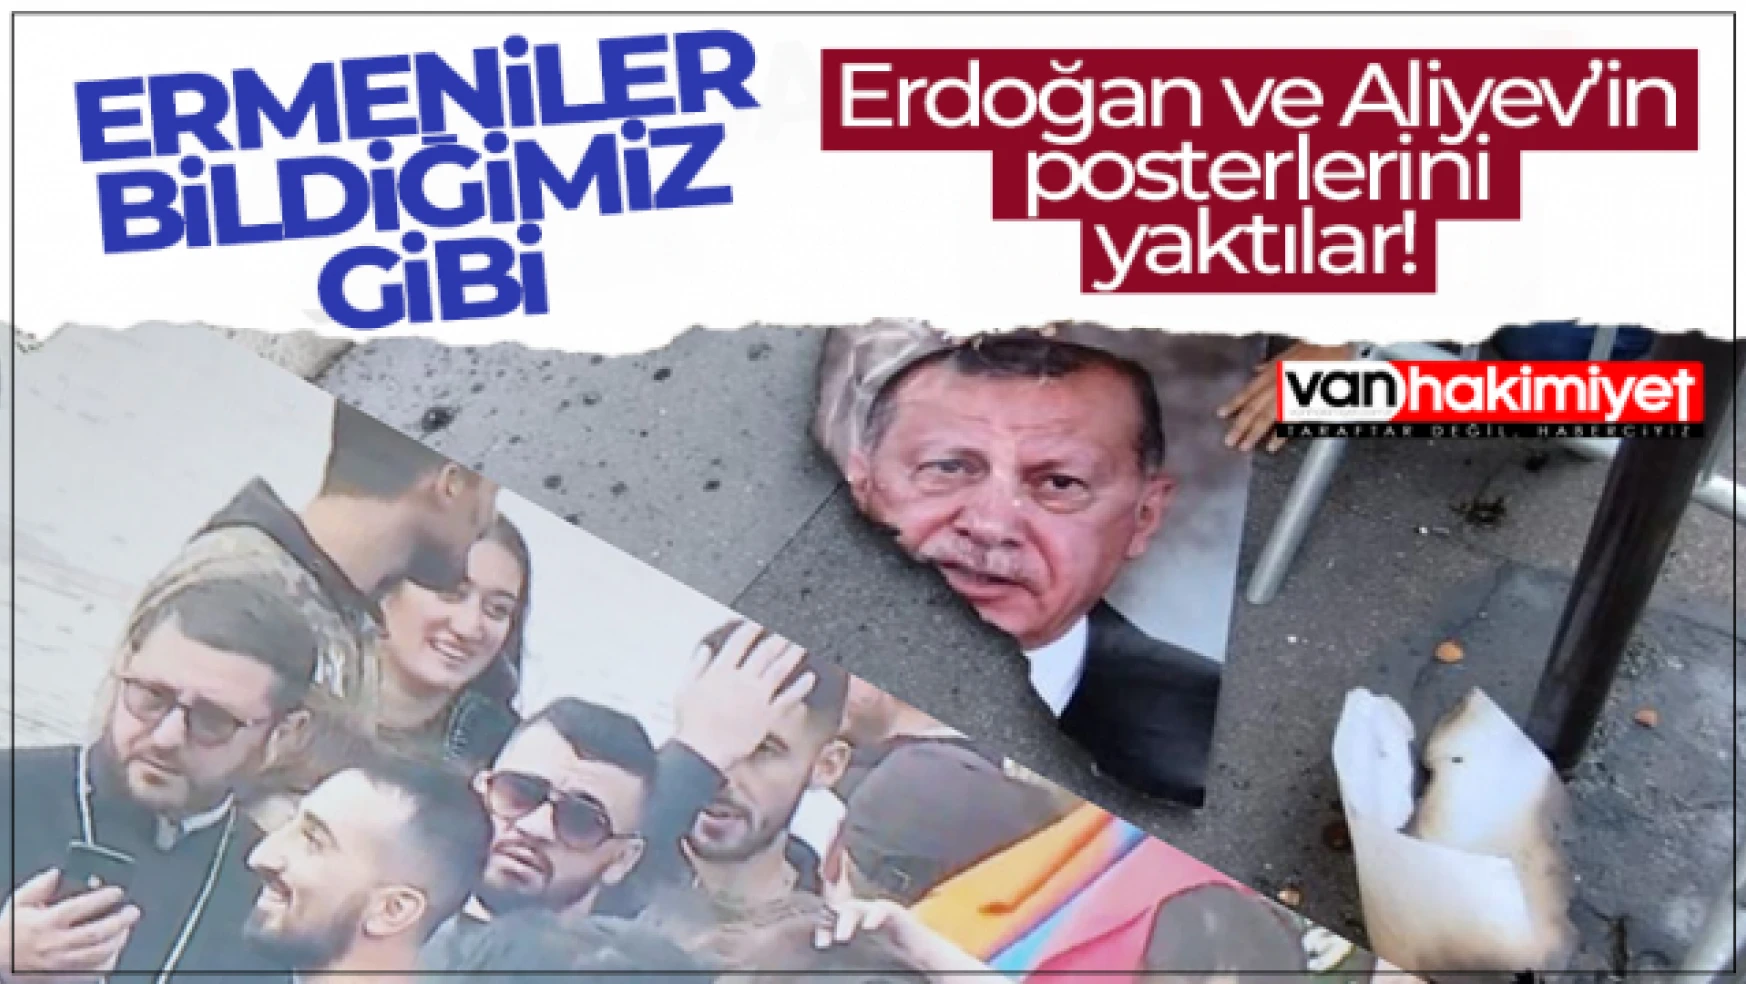 Ermeniler, Erdoğan ve Aliyev posterlerini yaktı